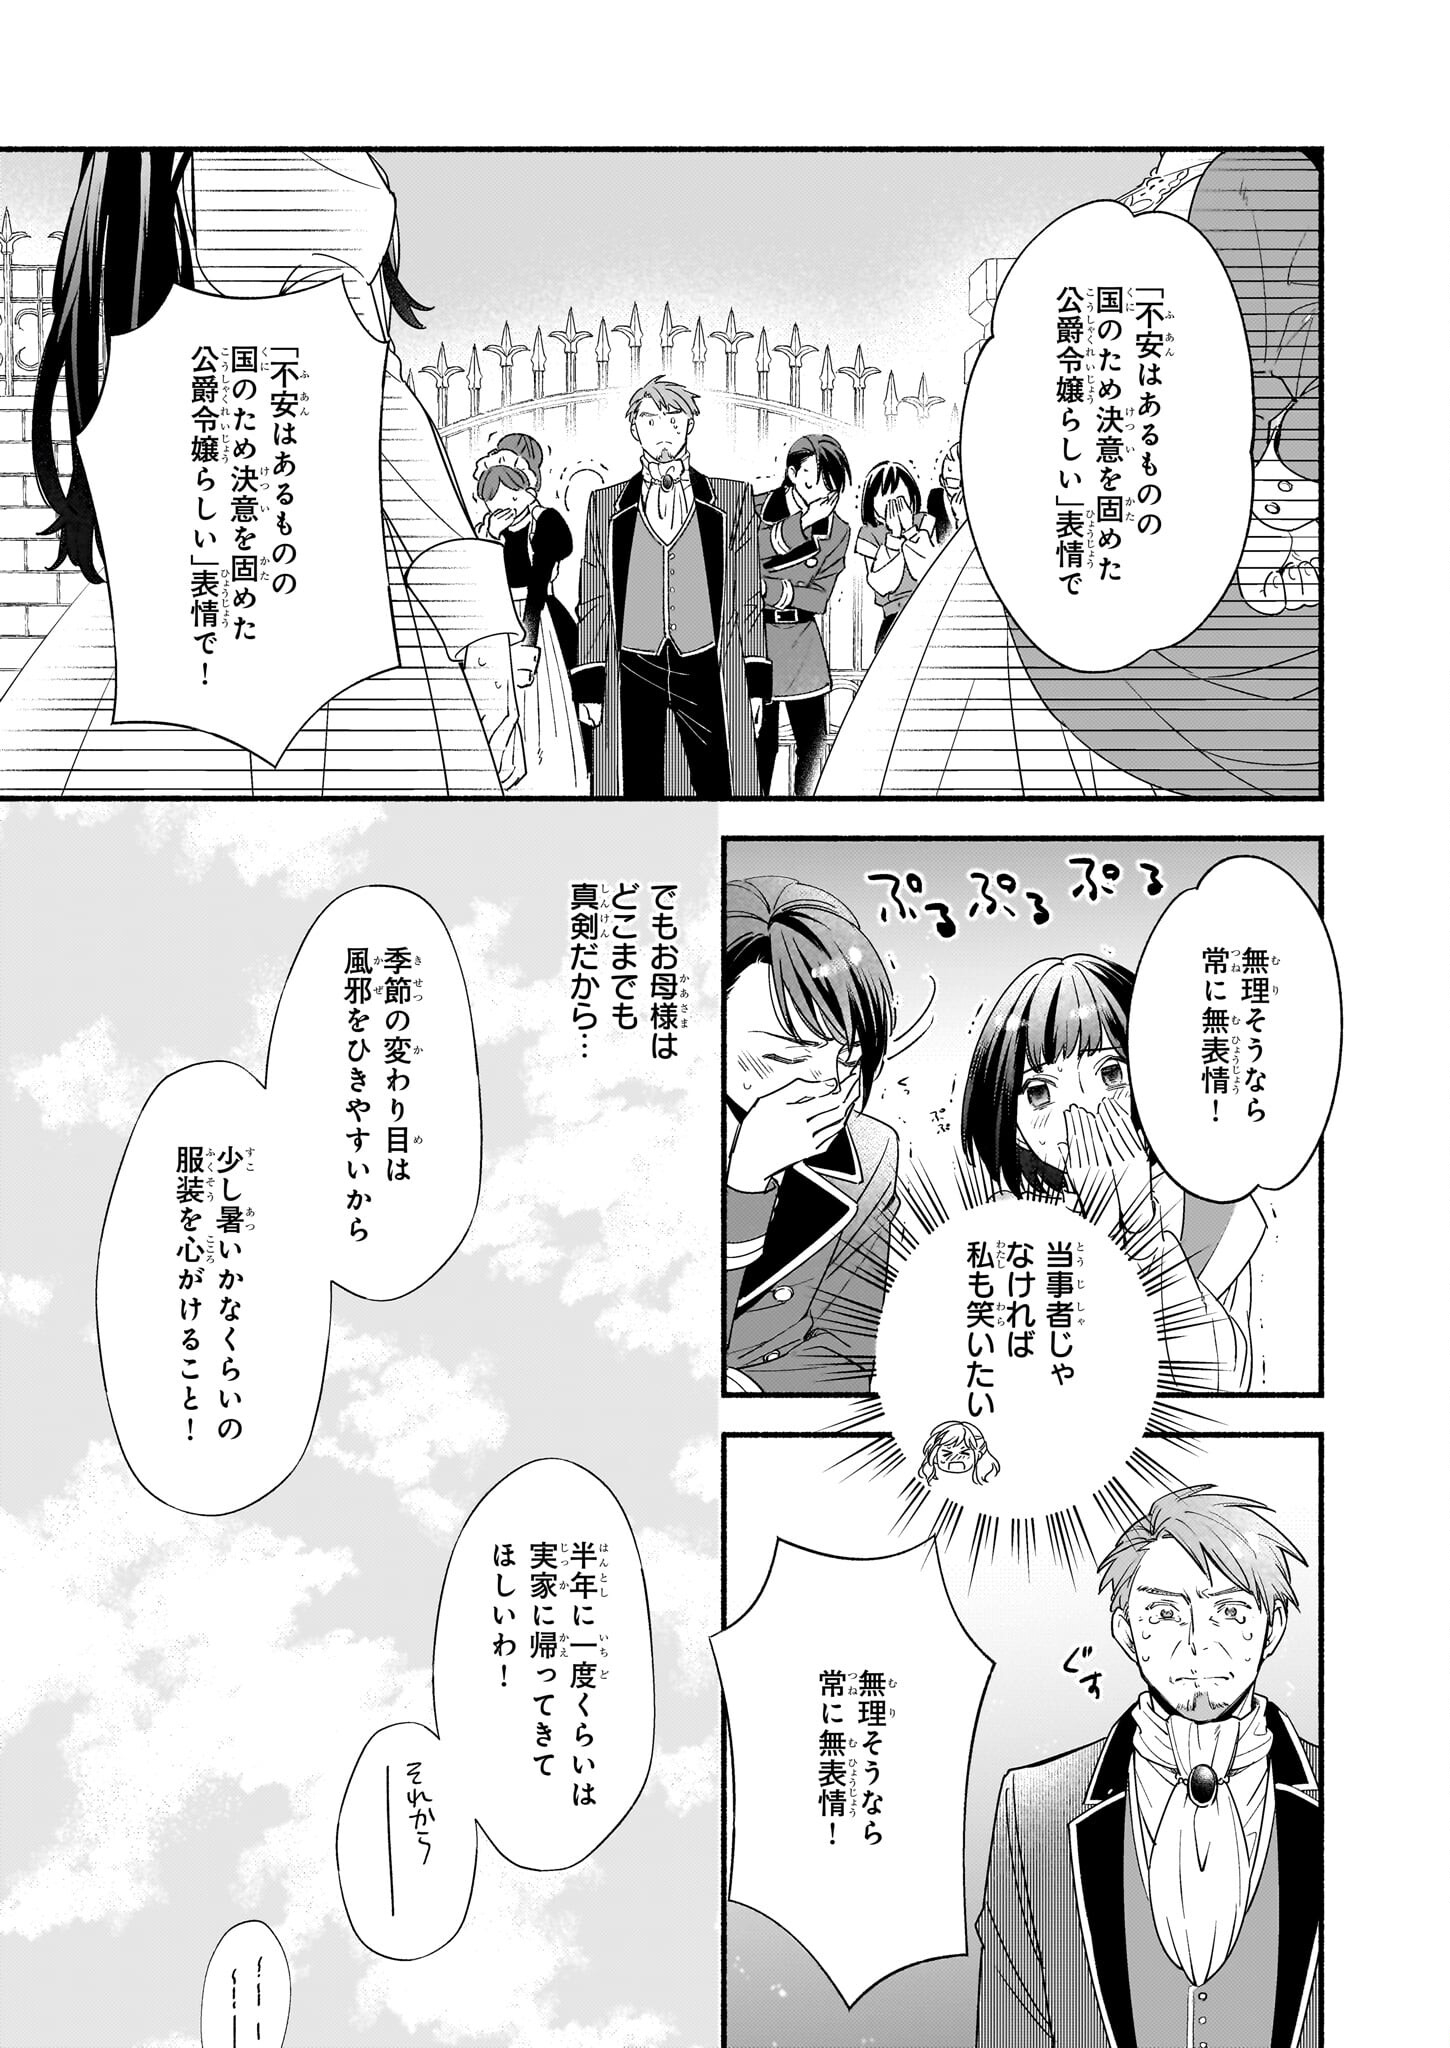 Suitei Akuyaku Reijou wa Koku Ichiban no Busaiku ni Totsugasareru you desu - Chapter 5.1 - Page 3